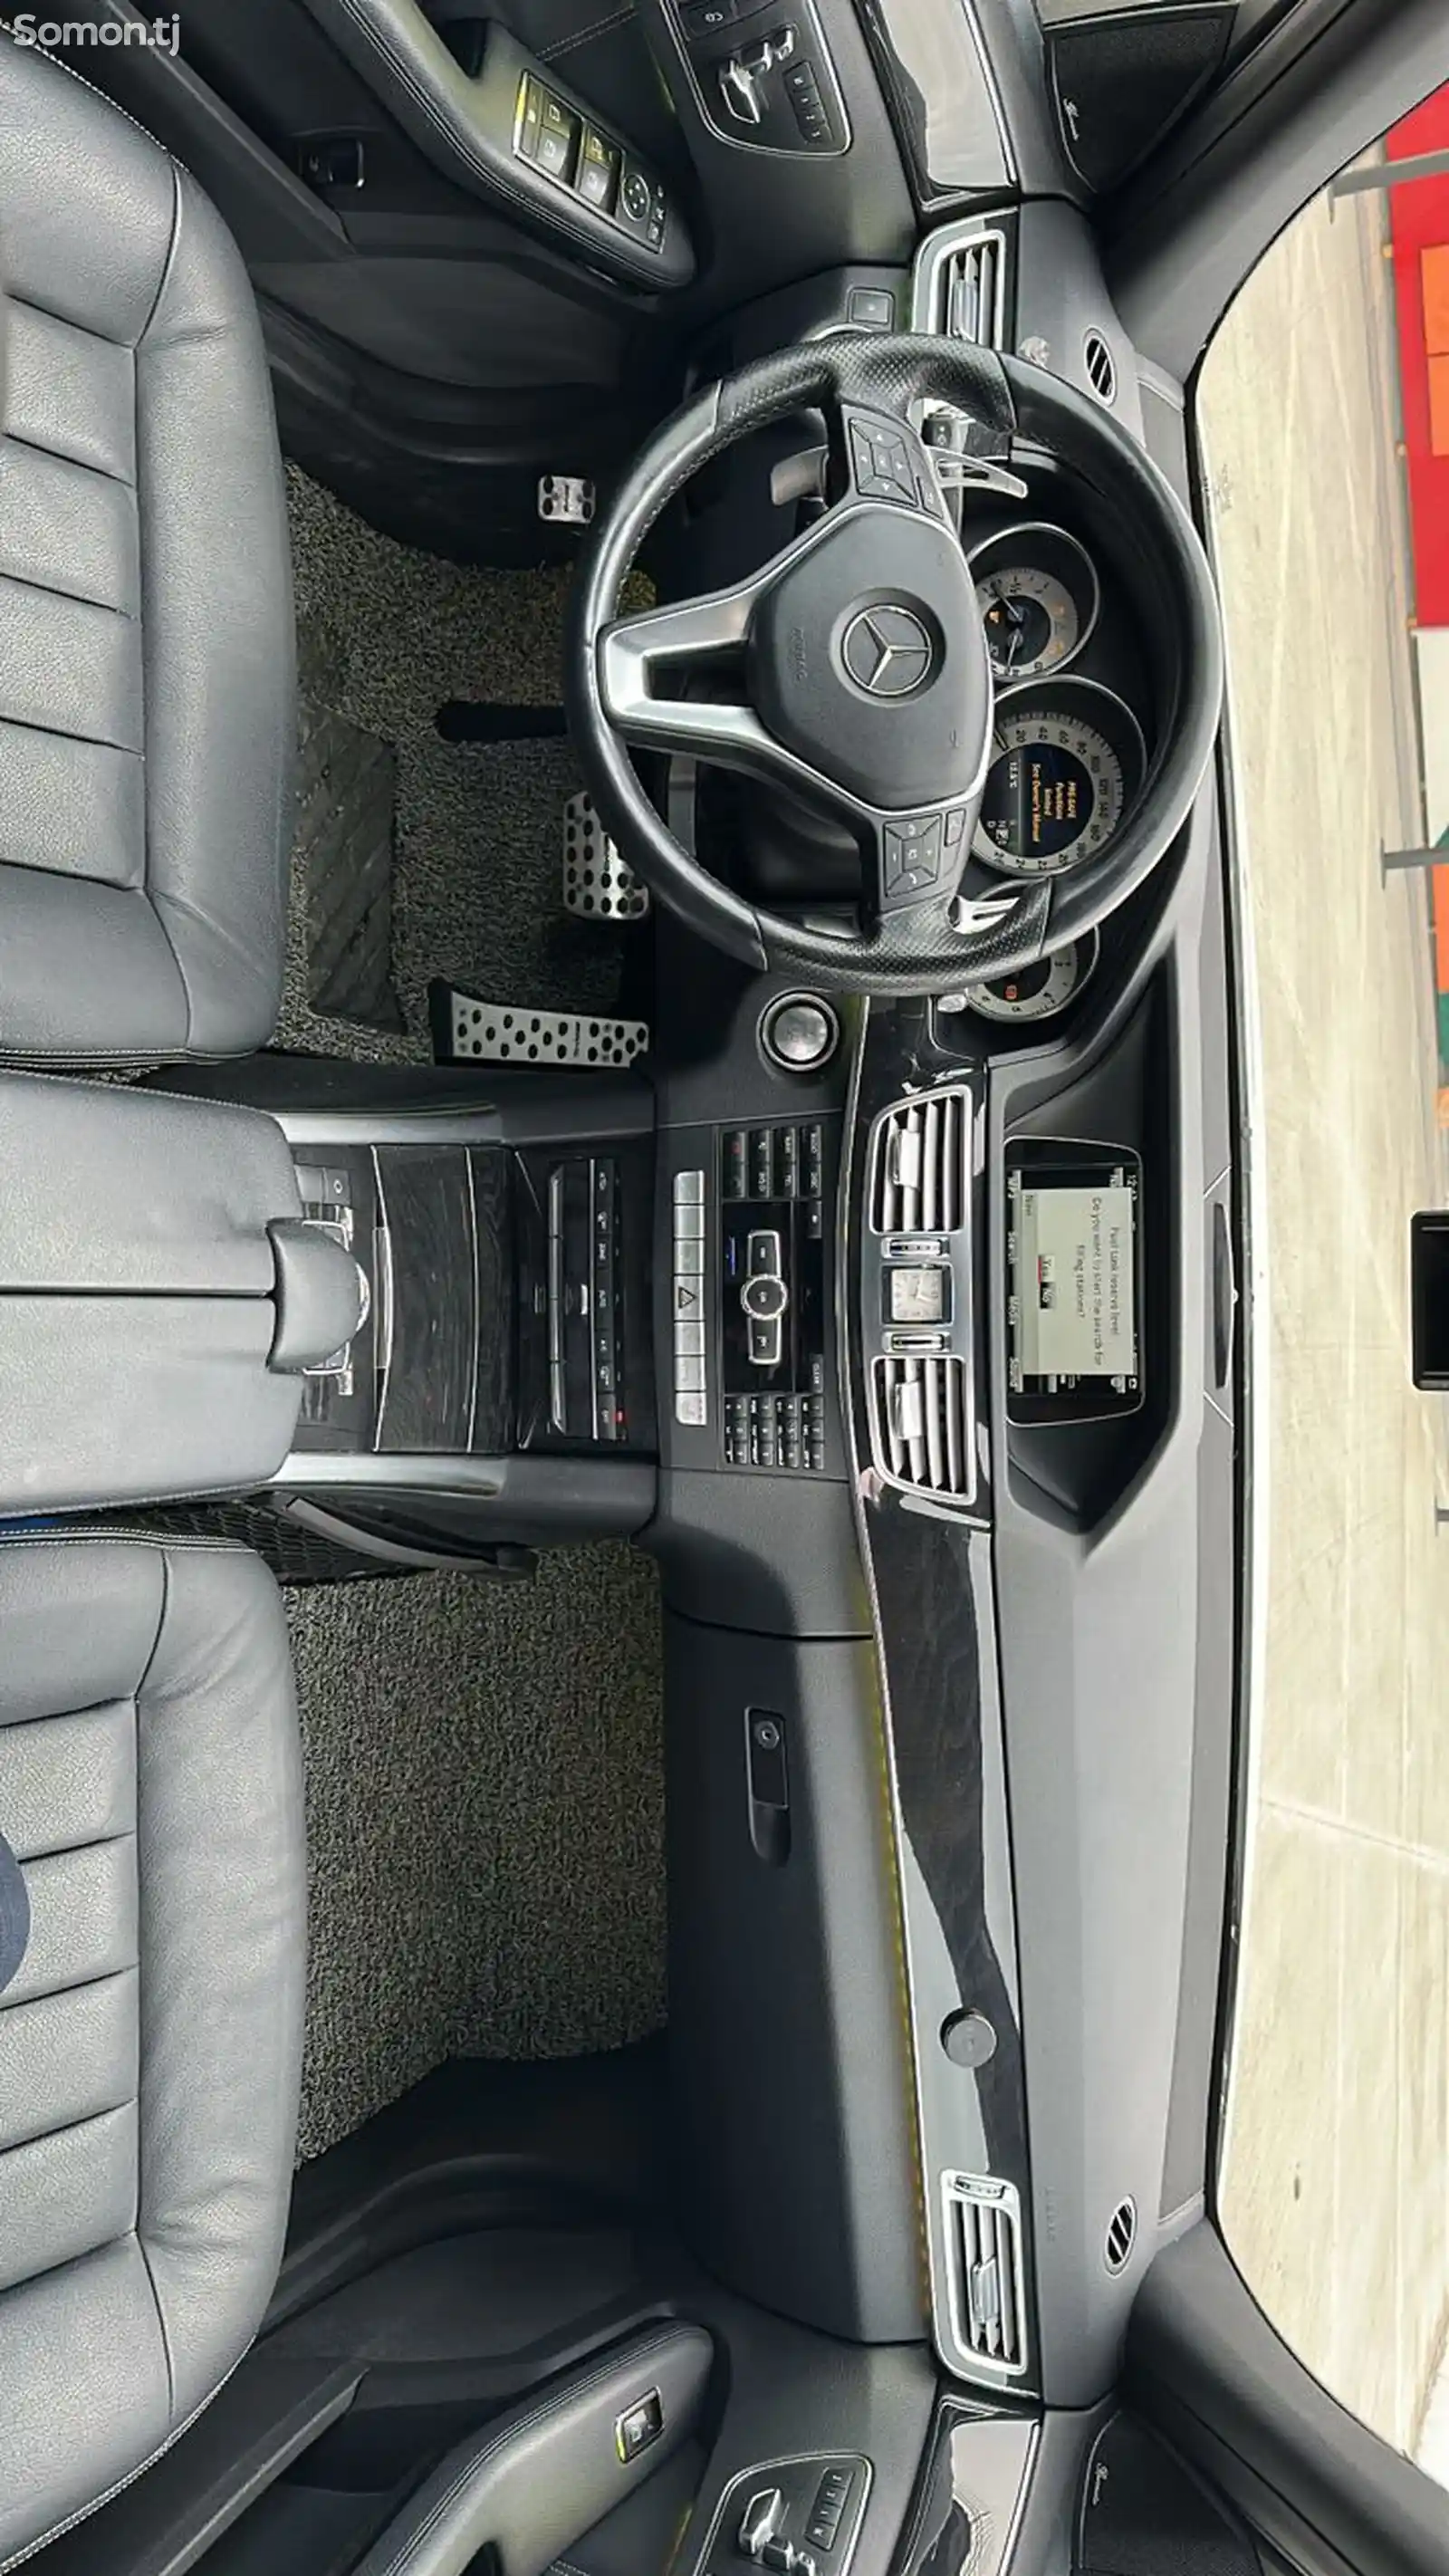 Mercedes-Benz E class, 2014-5